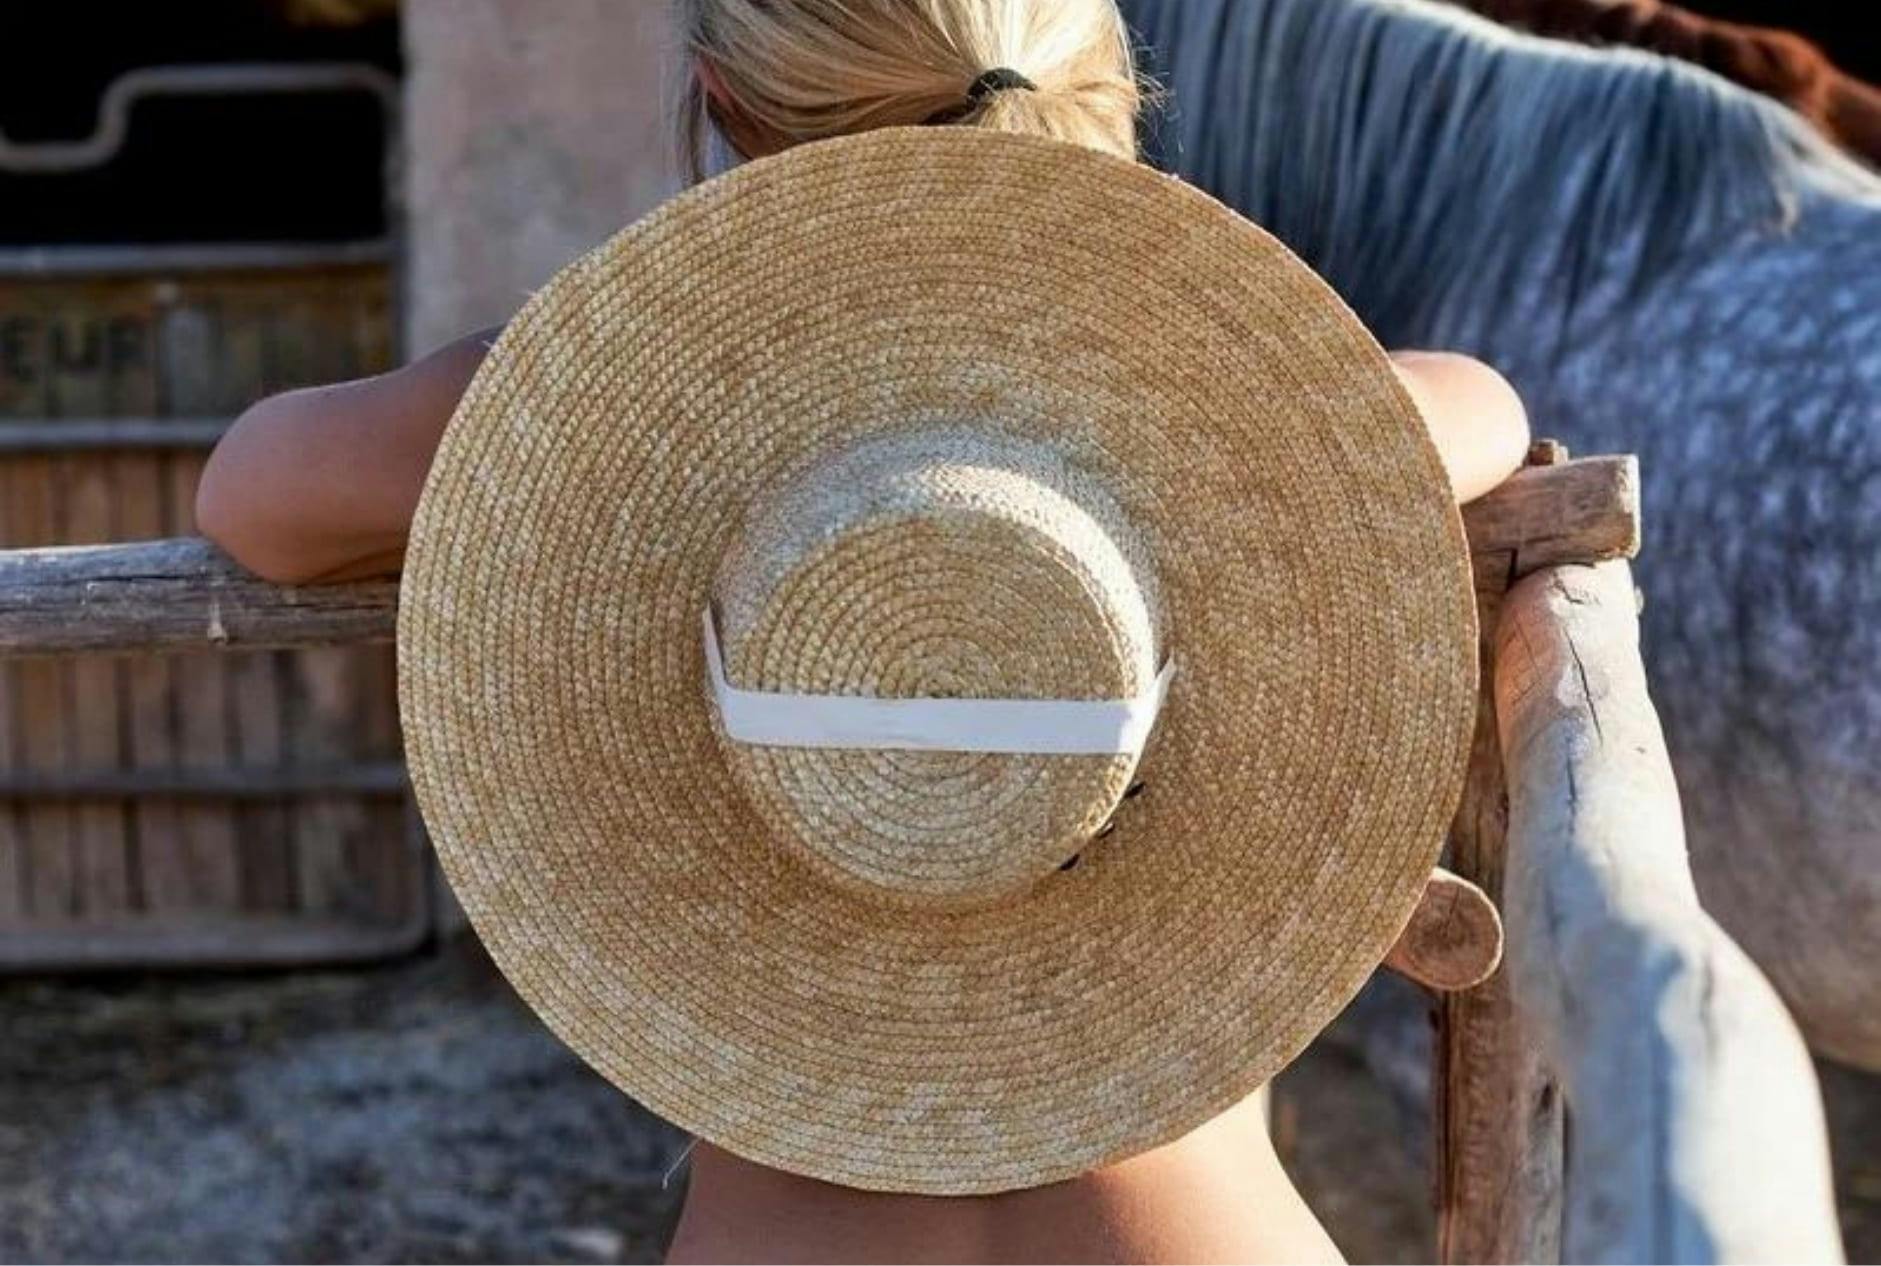 chapeau merle anti-uv protection soleil ete valise responsable ethique vacances